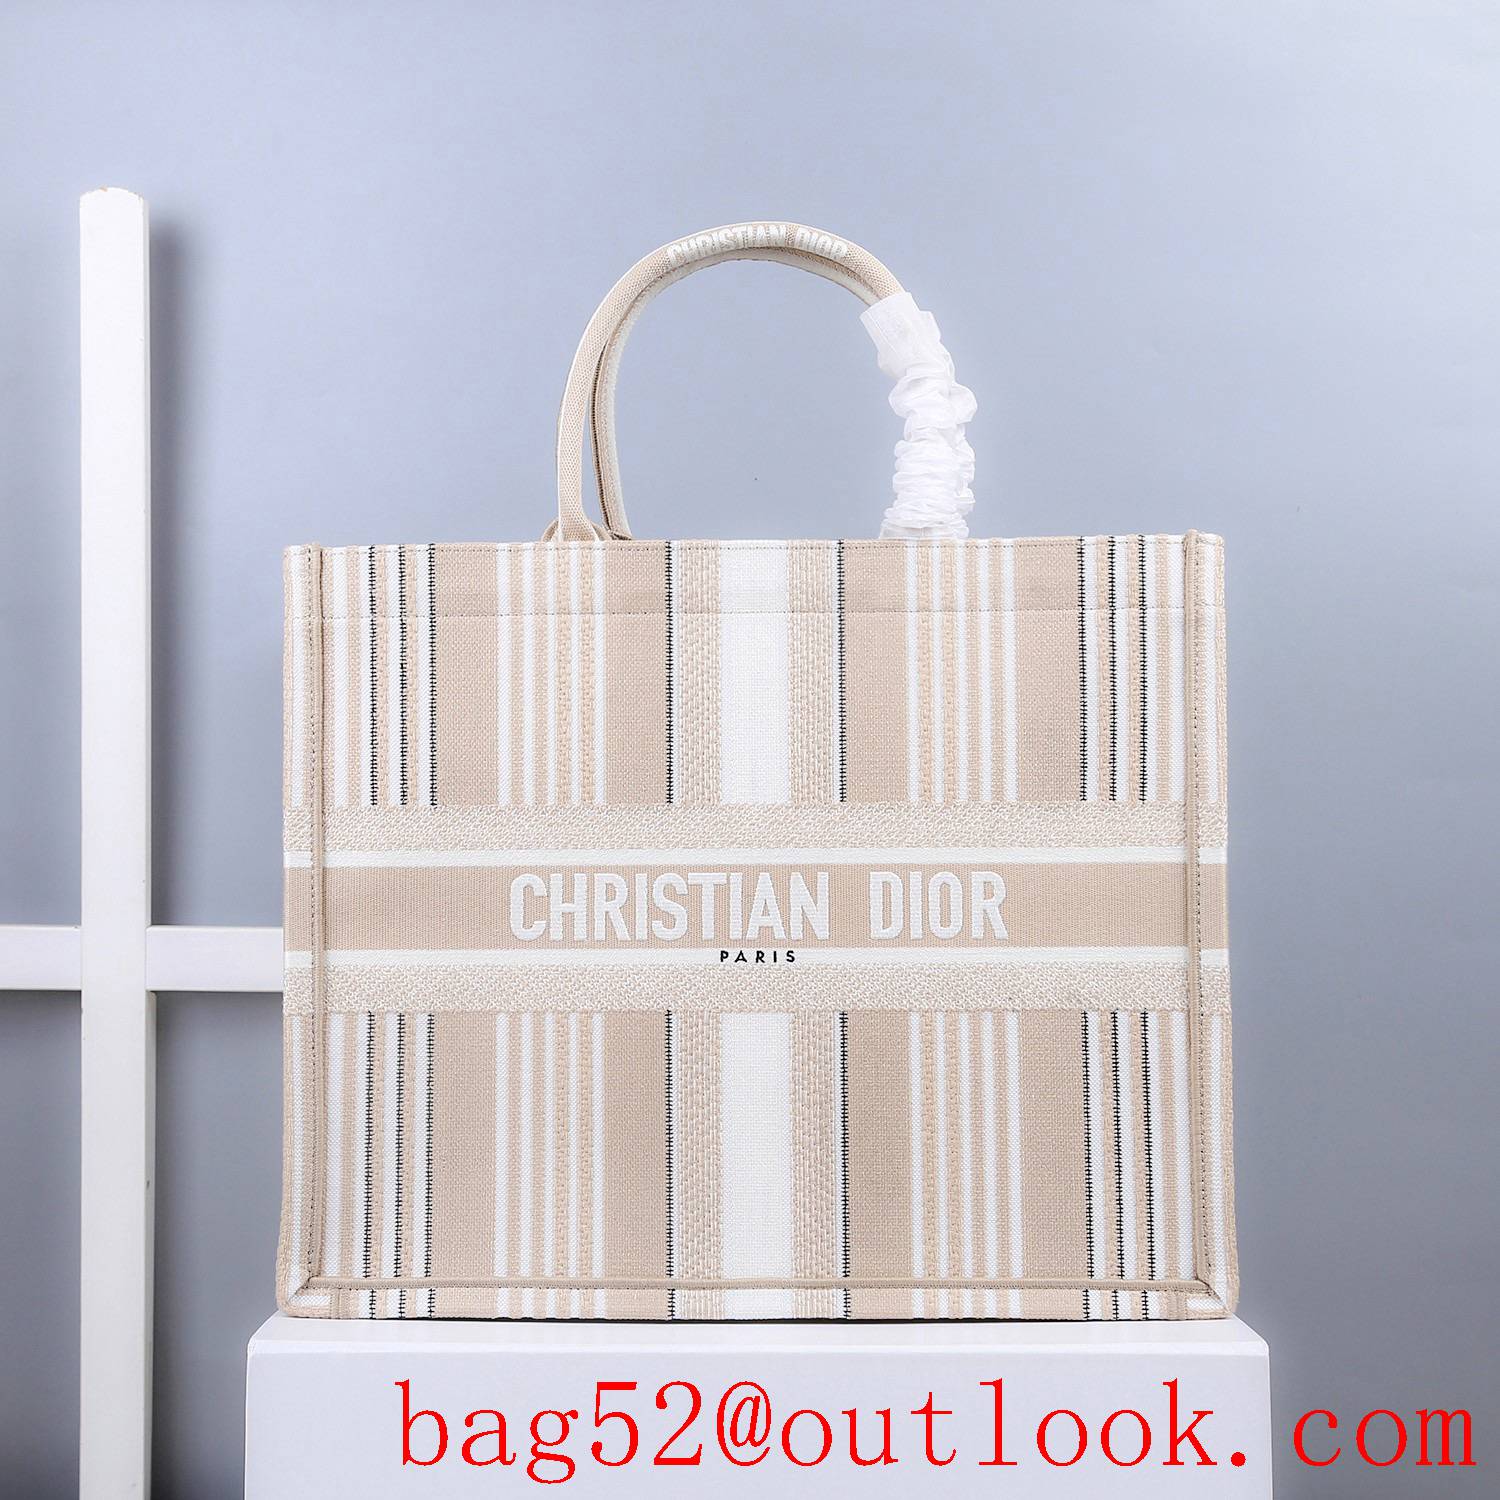 Dior Large white stripe tote undeararm book tote bag